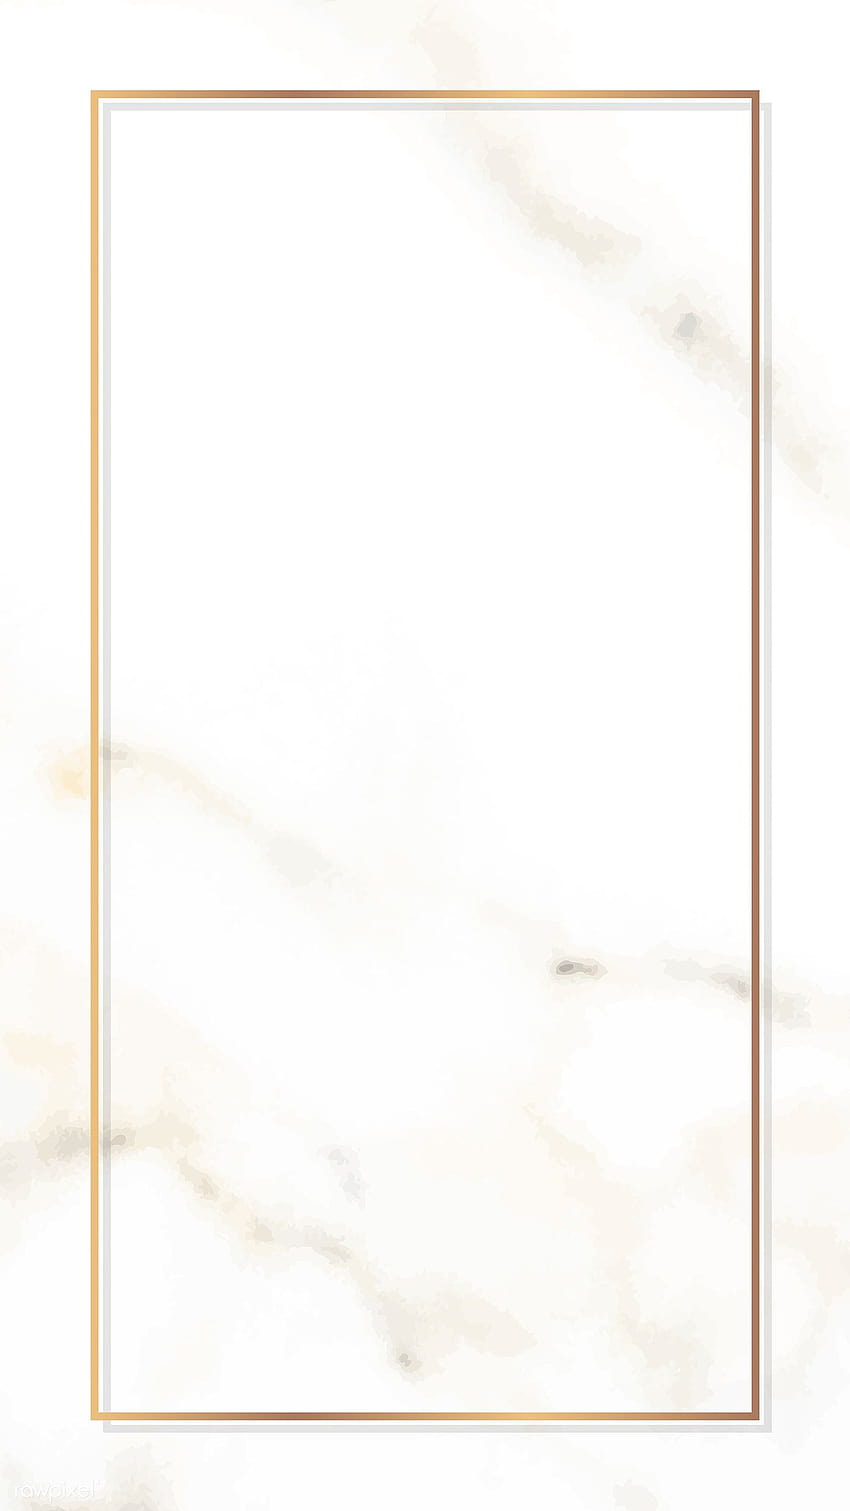 Bingkai emas persegi panjang pada vektor marmer putih, perbatasan emas wallpaper ponsel HD